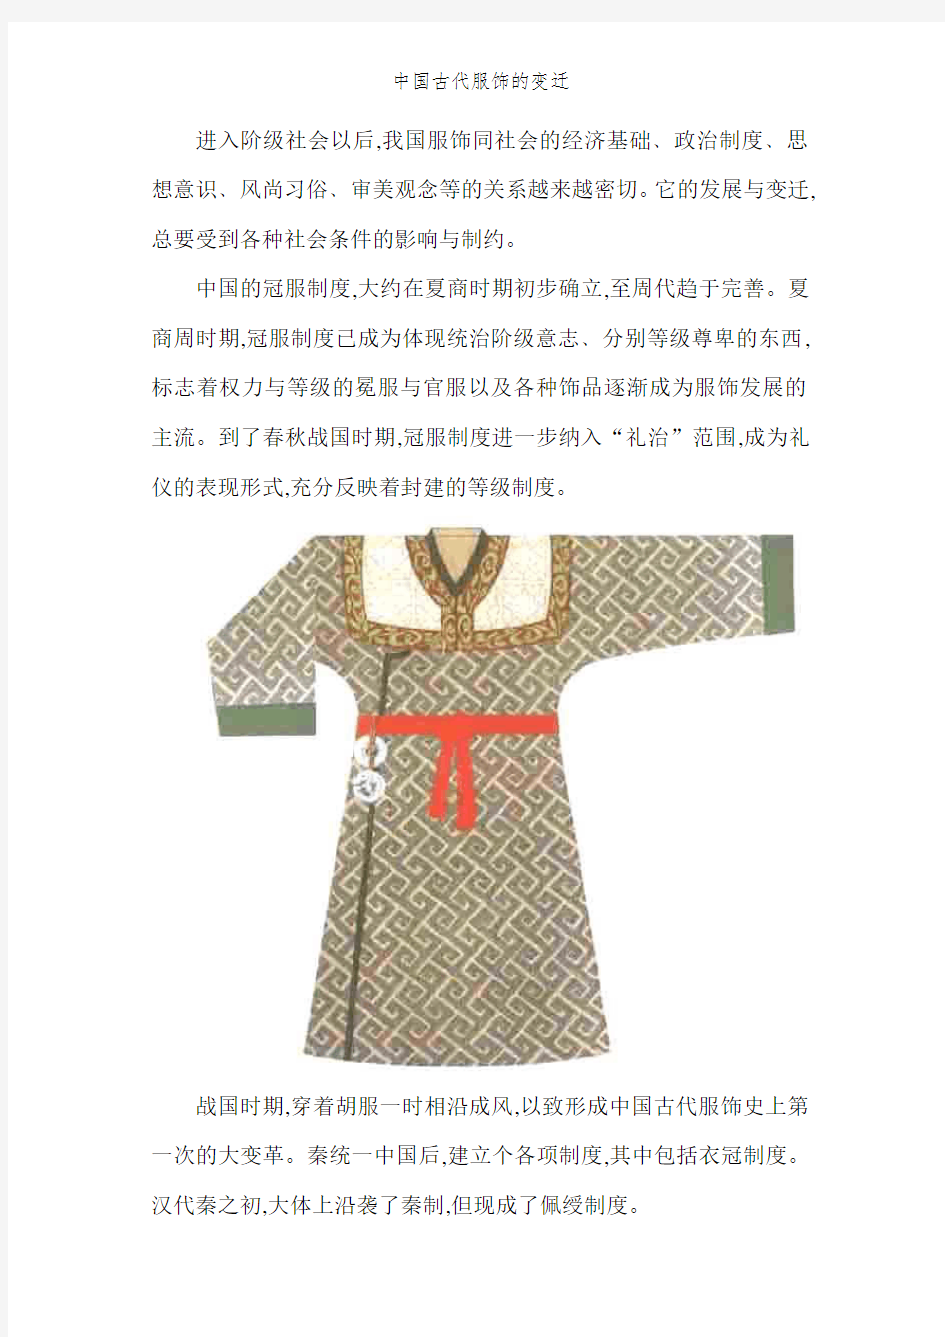 中国古代服饰的变迁 (2)